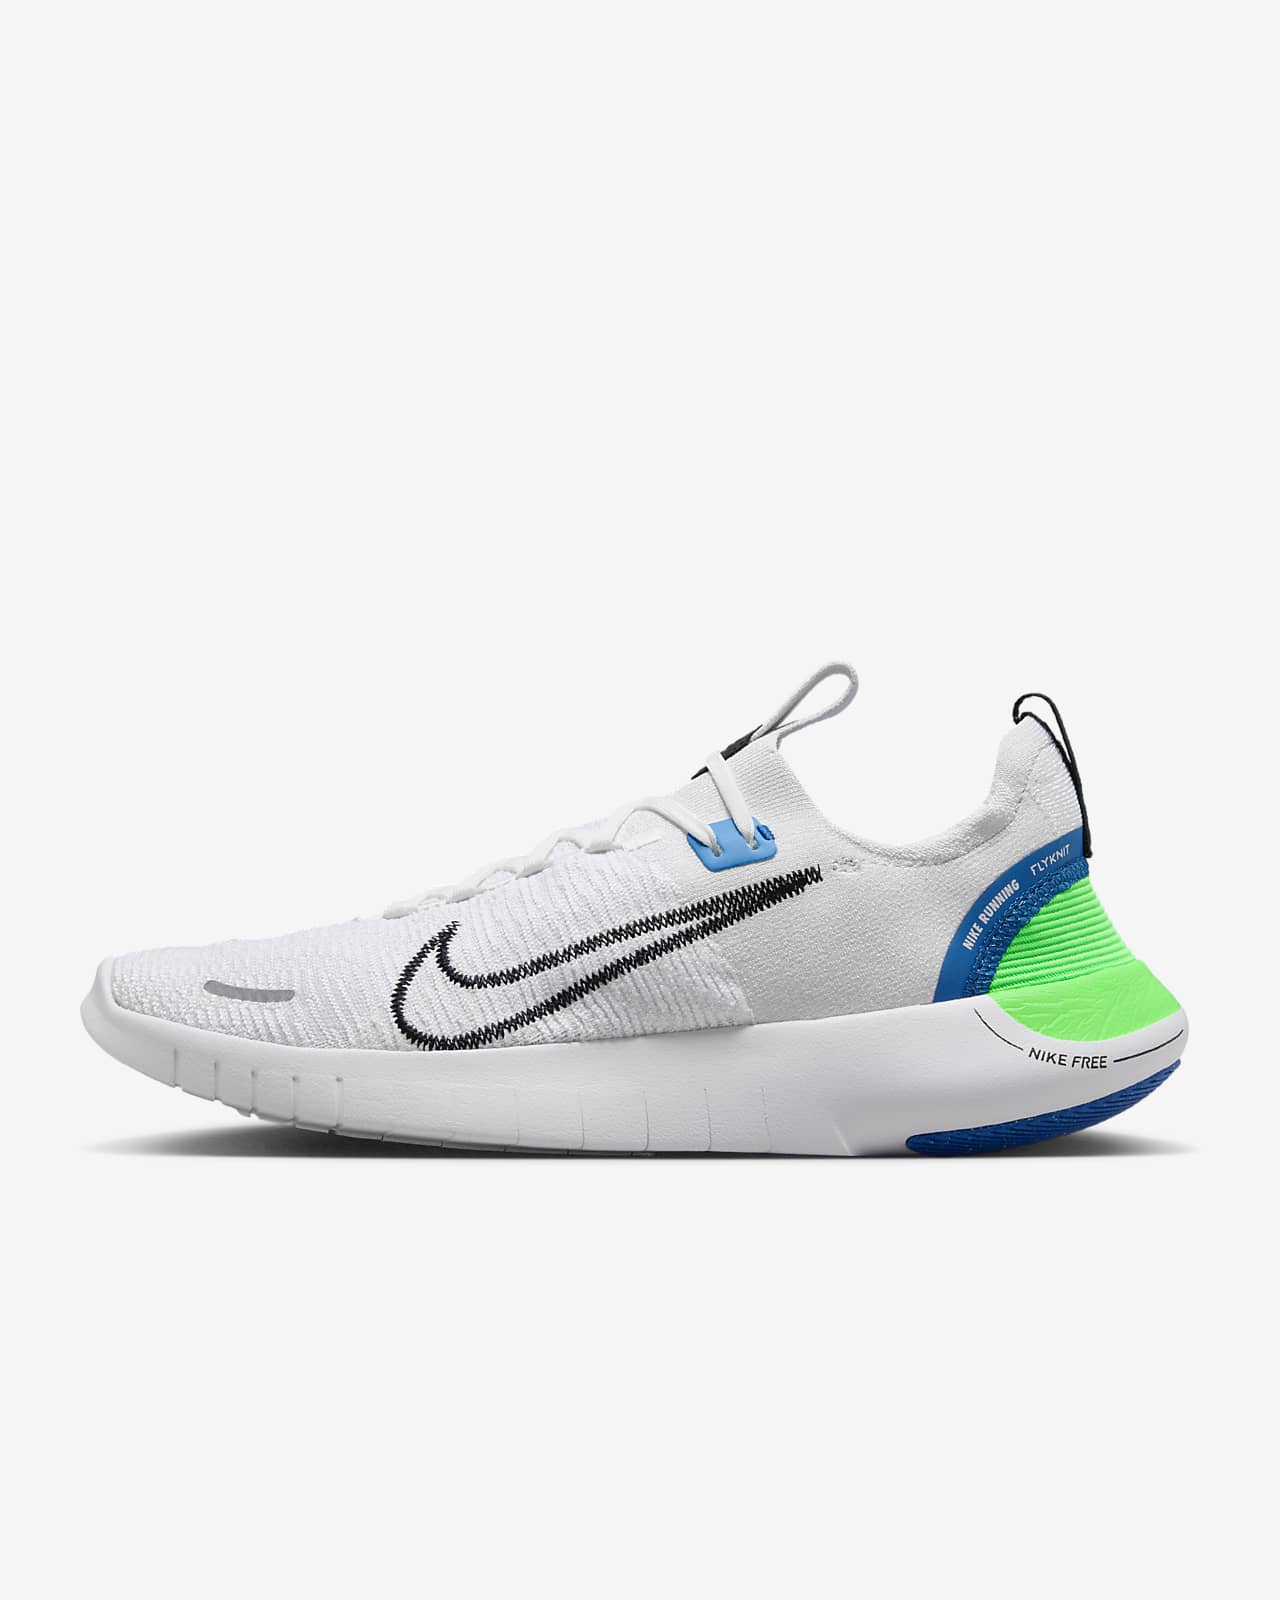 Ανδρικά παπούτσια για τρέξιμο σε δρόμο Nike Free RN NN